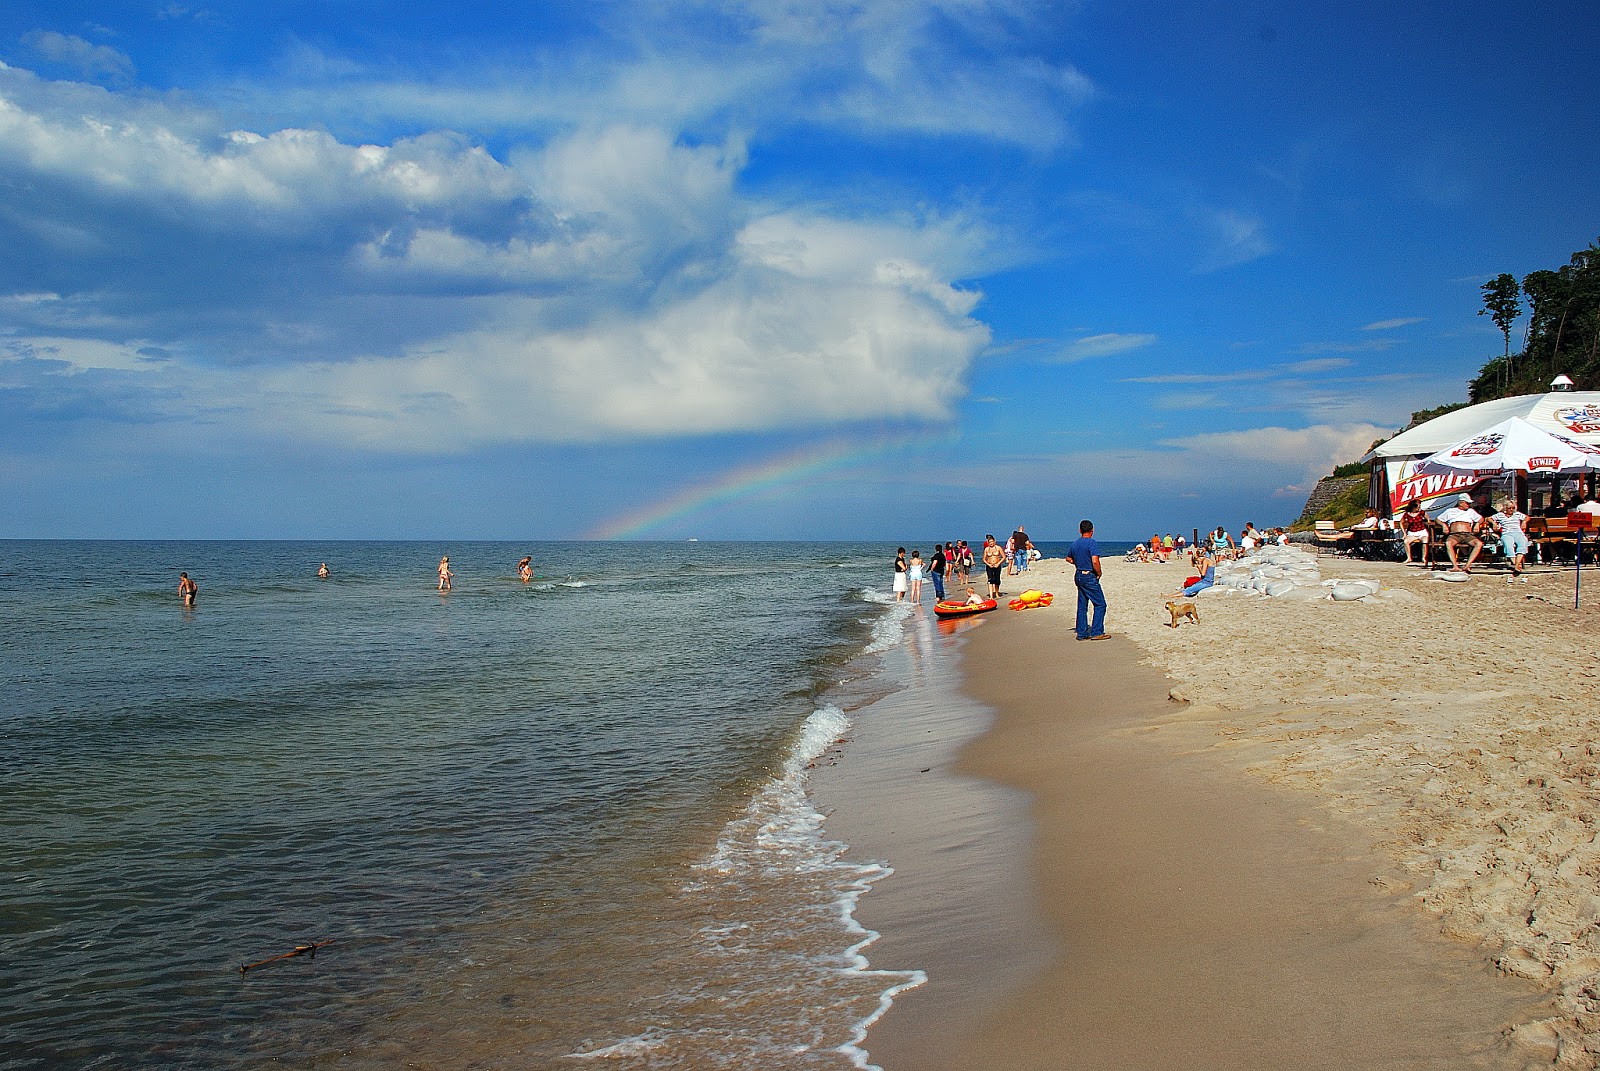 Photo de Yastshembya Gura Beach - endroit populaire parmi les connaisseurs de la détente